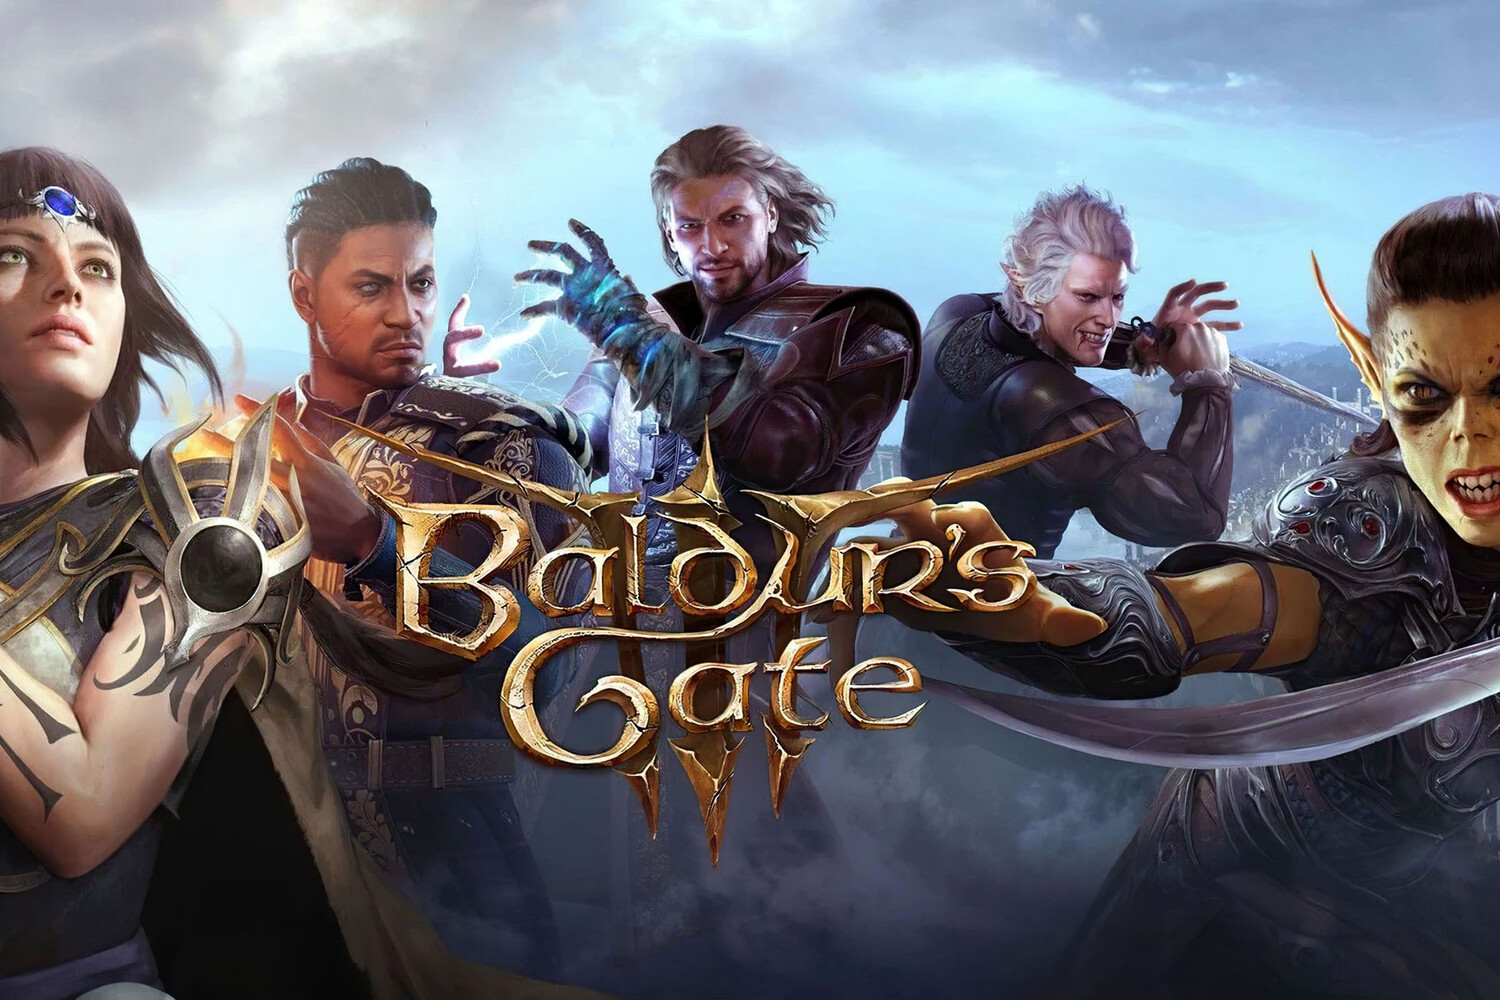 После Baldurs Gate 3 могут выйти еще игры по Dungeons and Dragons